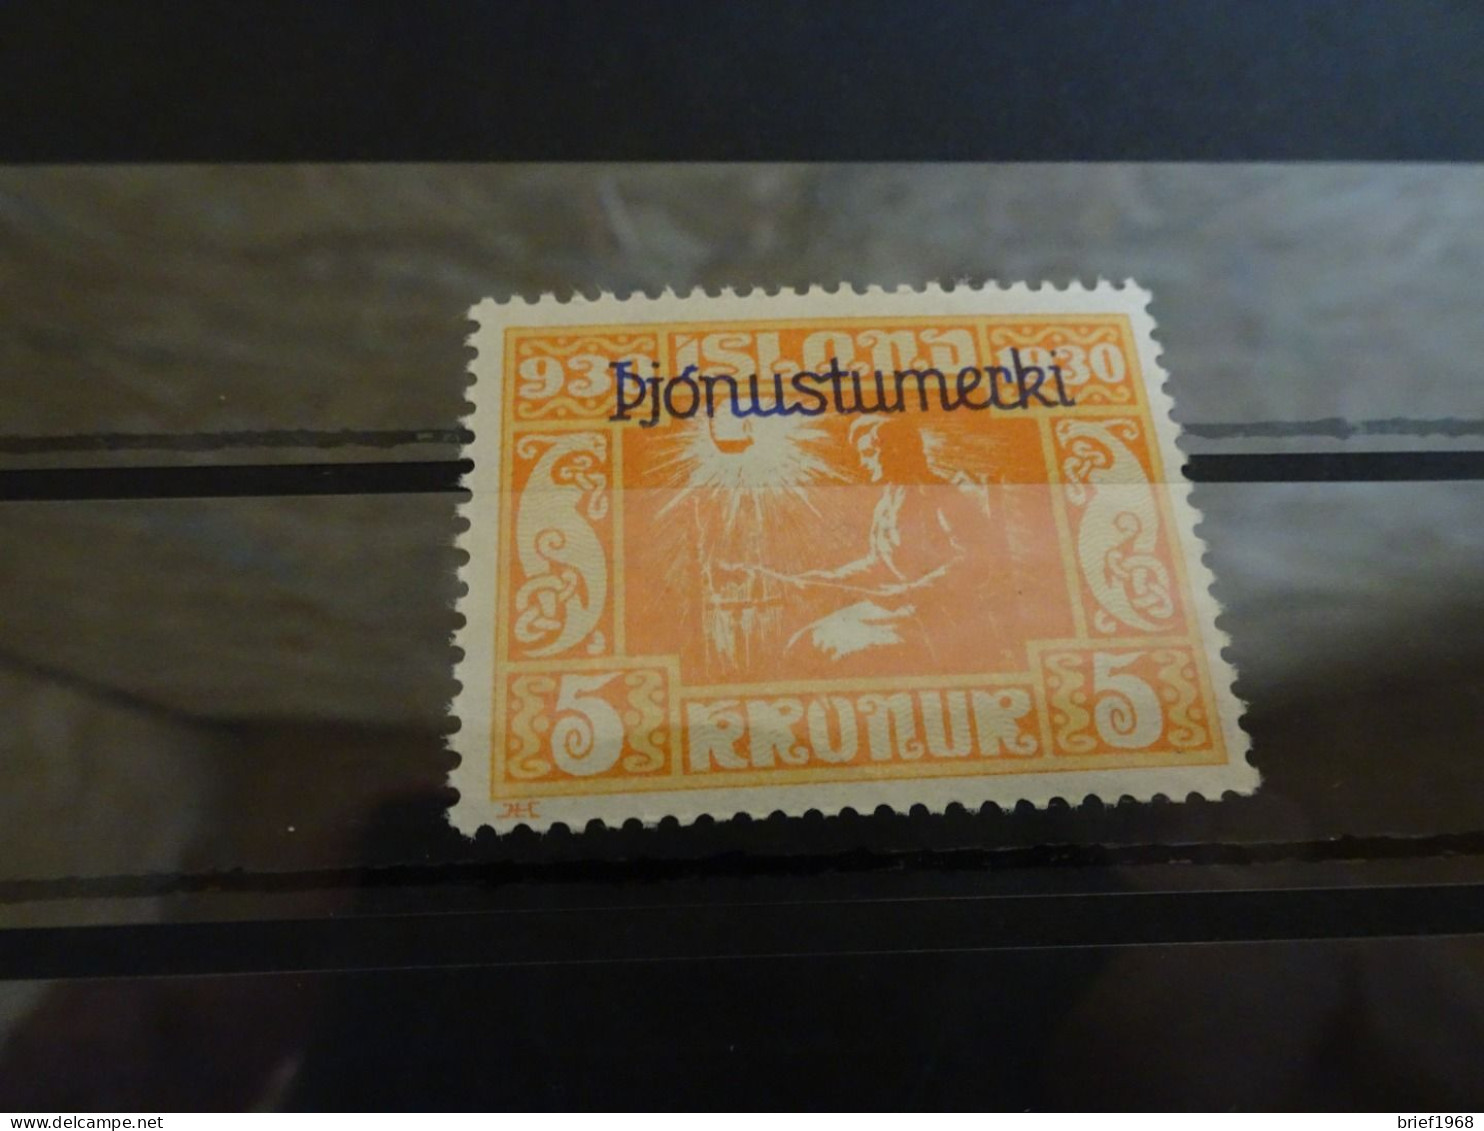 Island Dienst Michel 57 Postfrisch (18169) - Dienstzegels